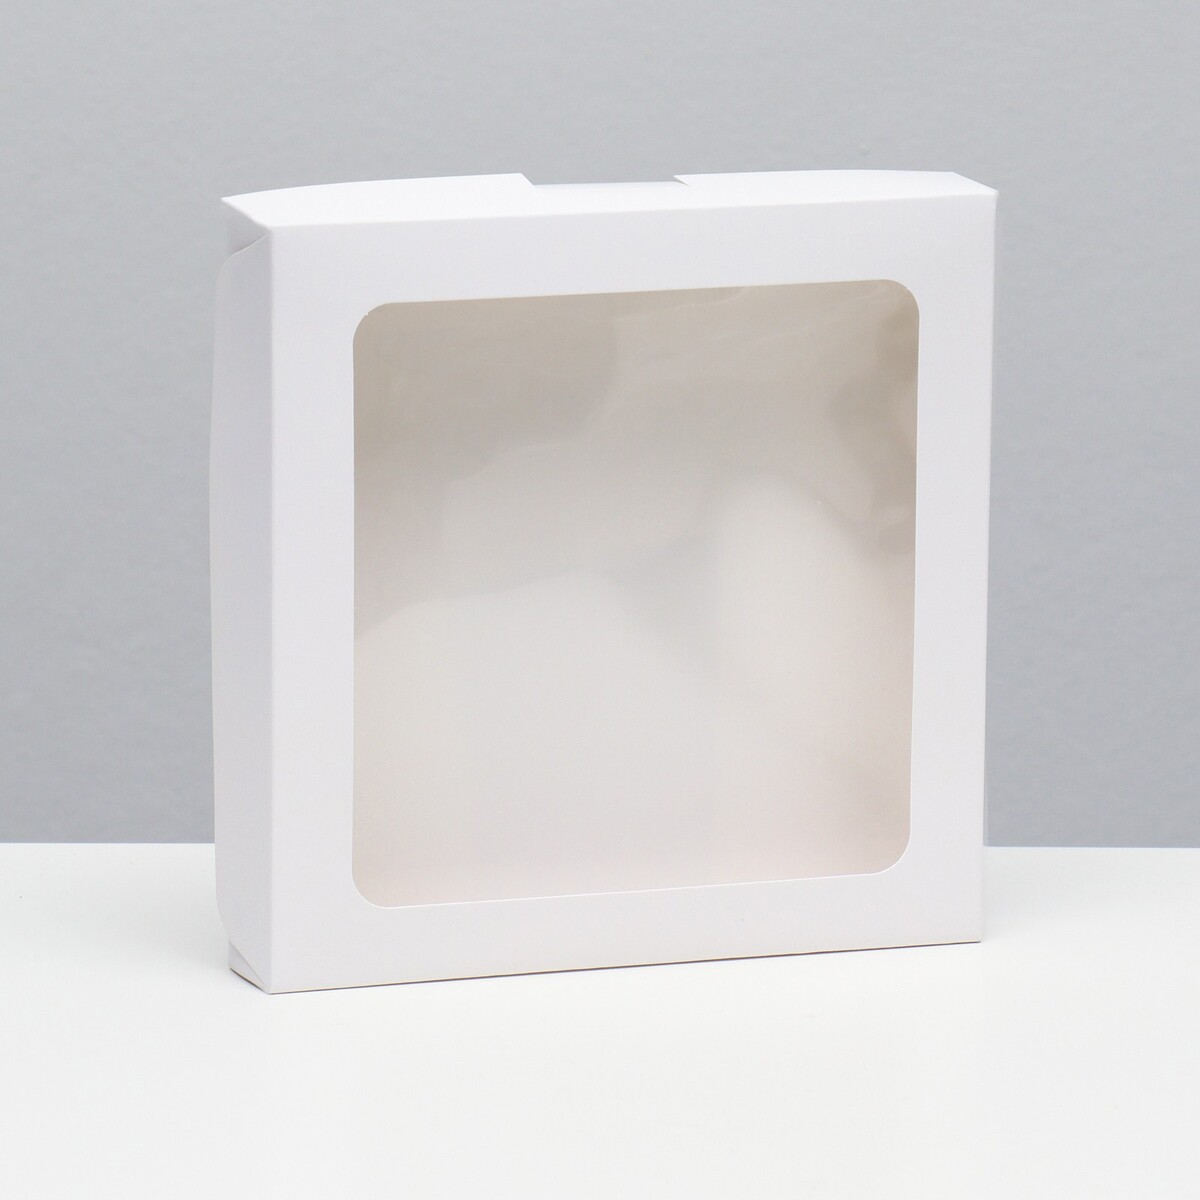 Коробка самосборная, белая, 19 х 19 х 3 см коробка самосборная белая 13 х 13 х 3 см